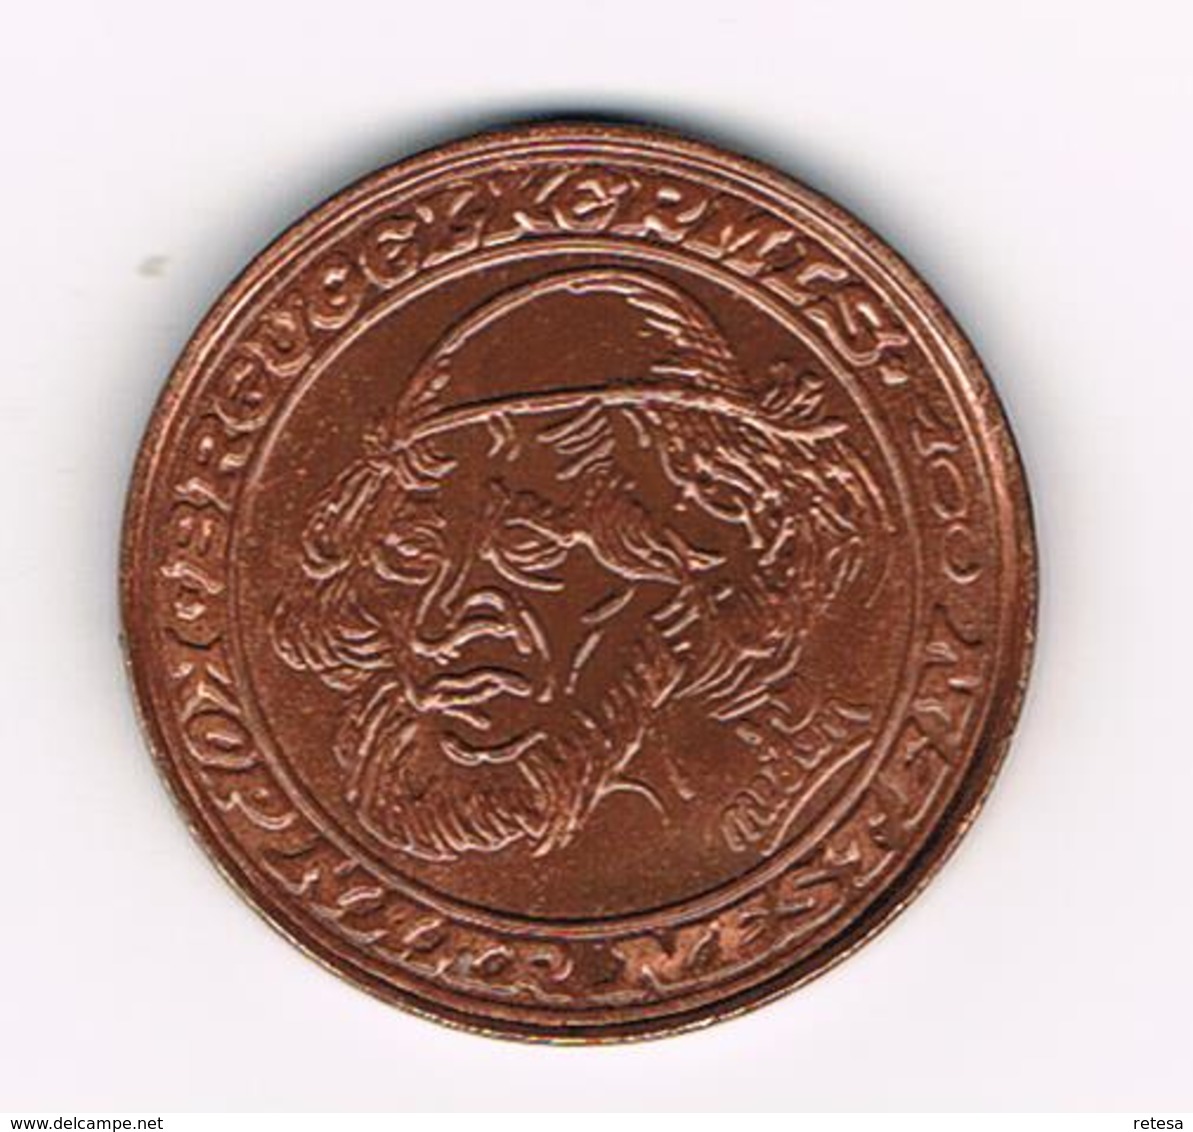 & BREUGELPENNING ONTWORPEN Door NESTEN 1982 - Souvenirmunten (elongated Coins)